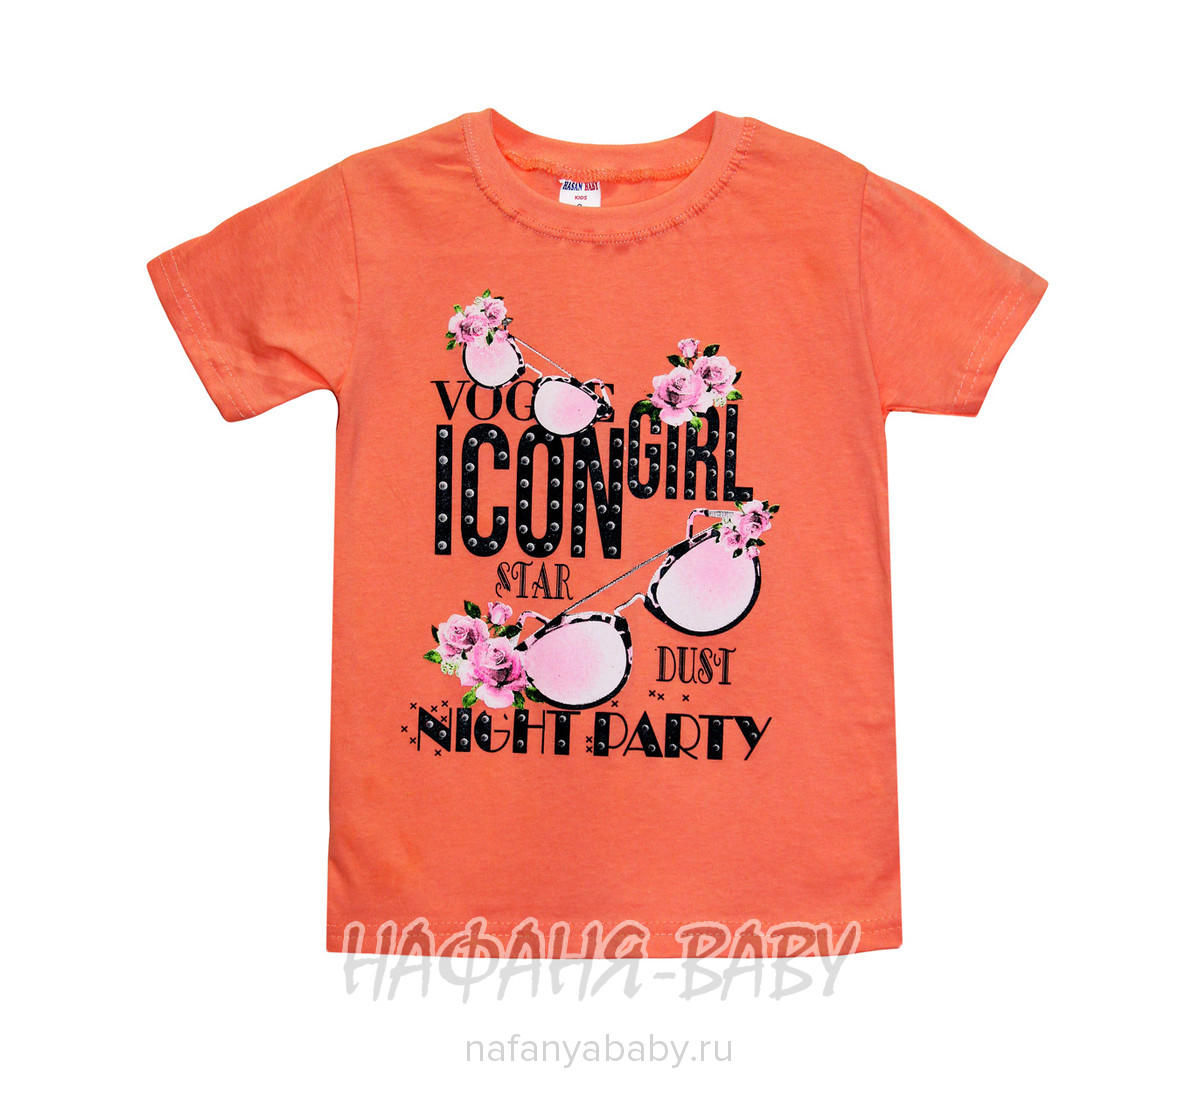 Детская футболка HASAN Bebe, купить в интернет магазине Нафаня. арт: 1135.